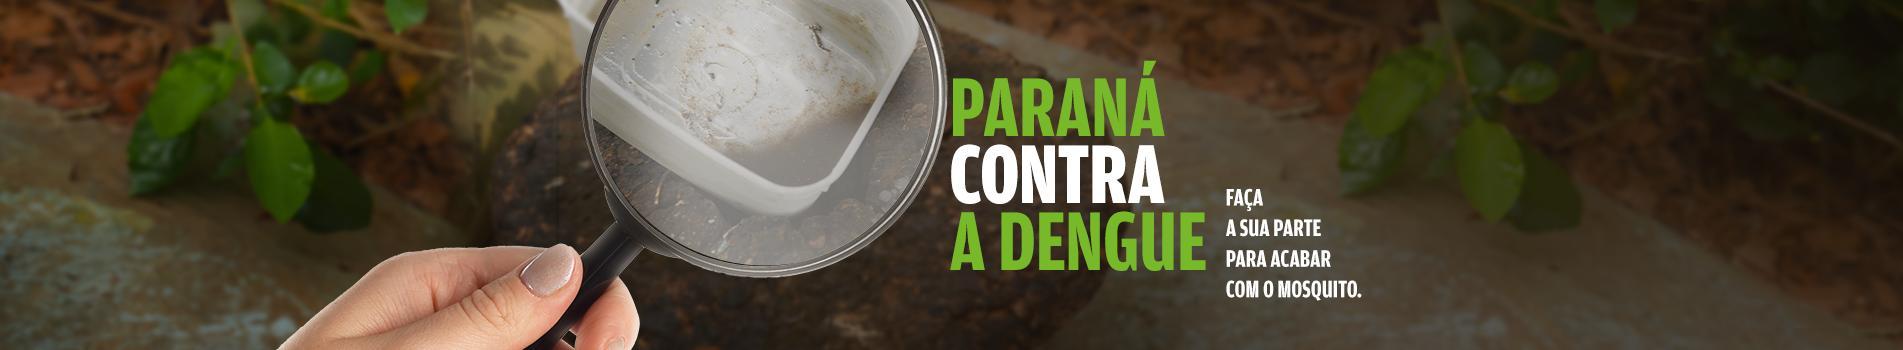 Paraná contar a dengue